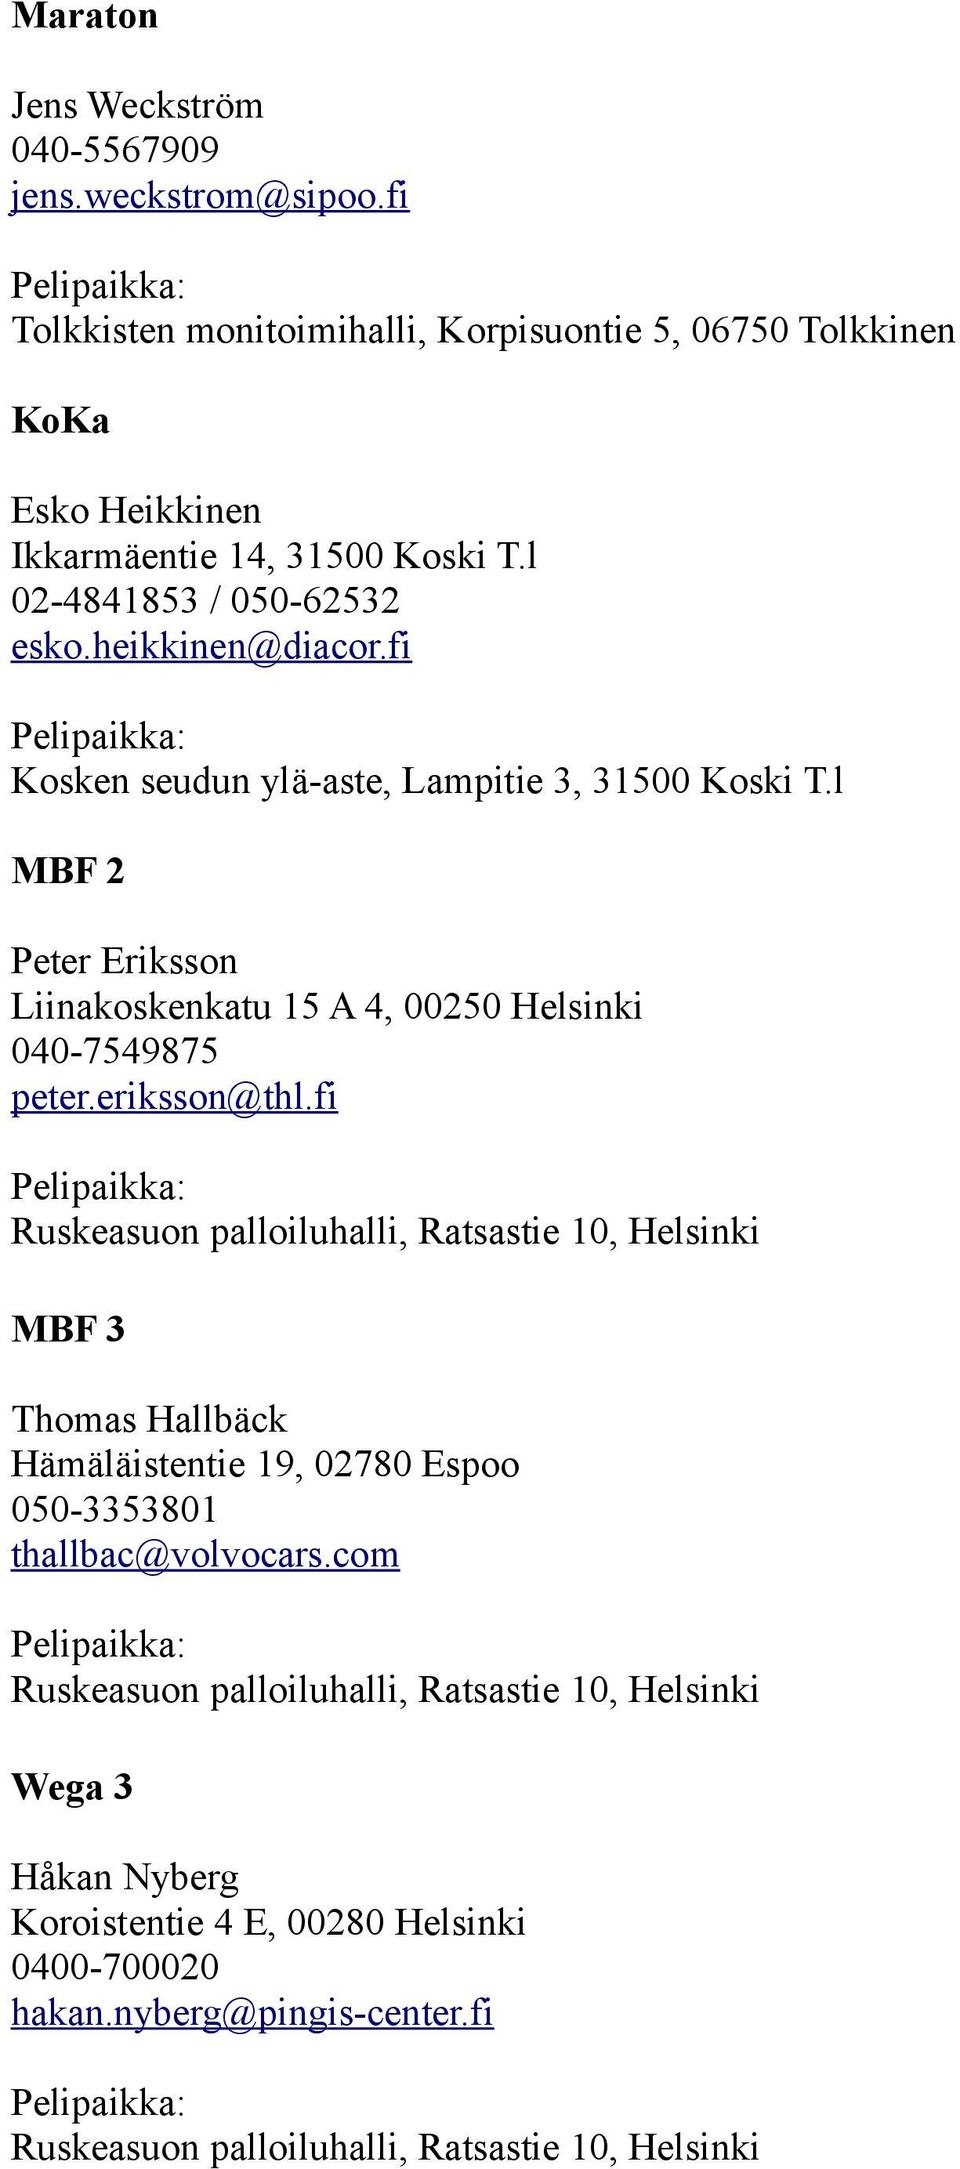 l 02-4841853 / 050-62532 esko.heikkinen@diacor.fi Kosken seudun ylä-aste, Lampitie 3, 31500 Koski T.